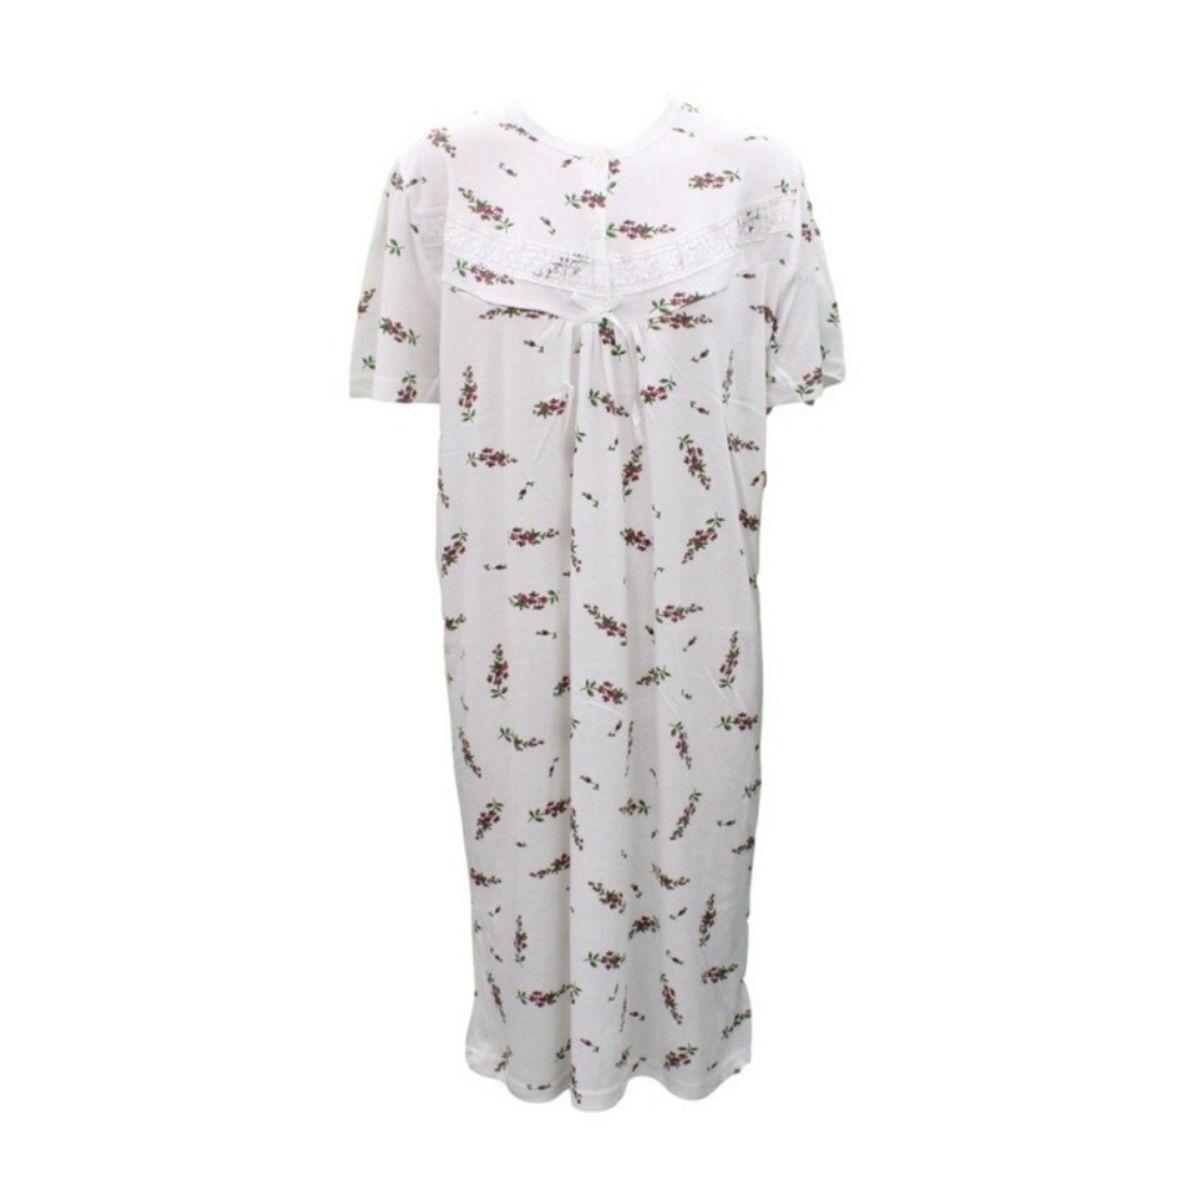 NEW Women's Ladies Cotton Nightie Night Gown Pajamas Pyjamas PJ Sleepwear